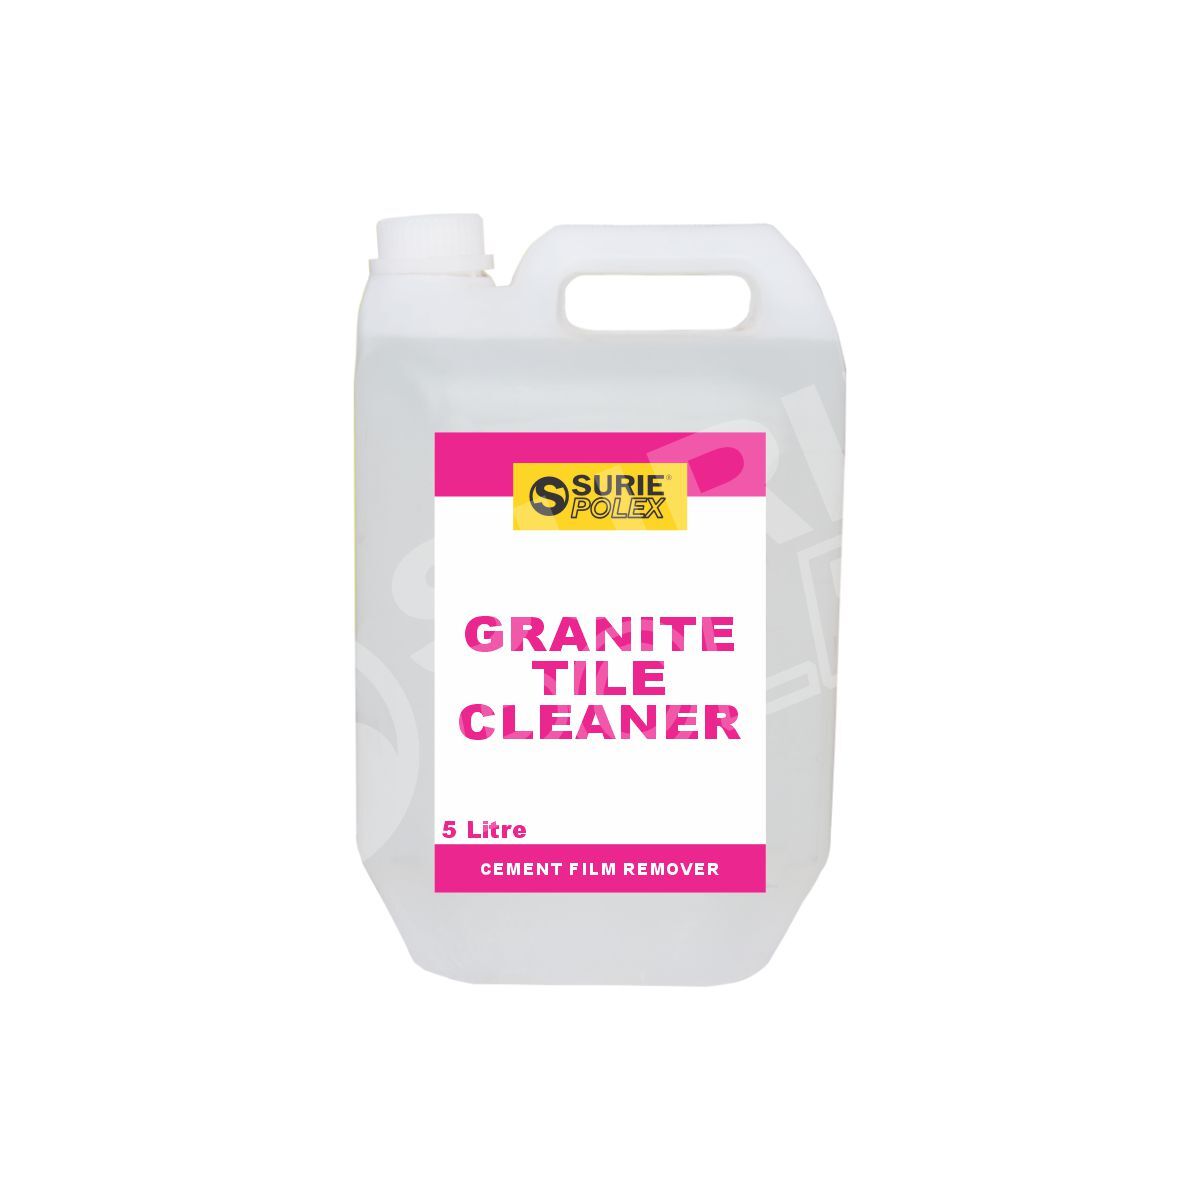 GRANITE TILE CLEANER 5LTR